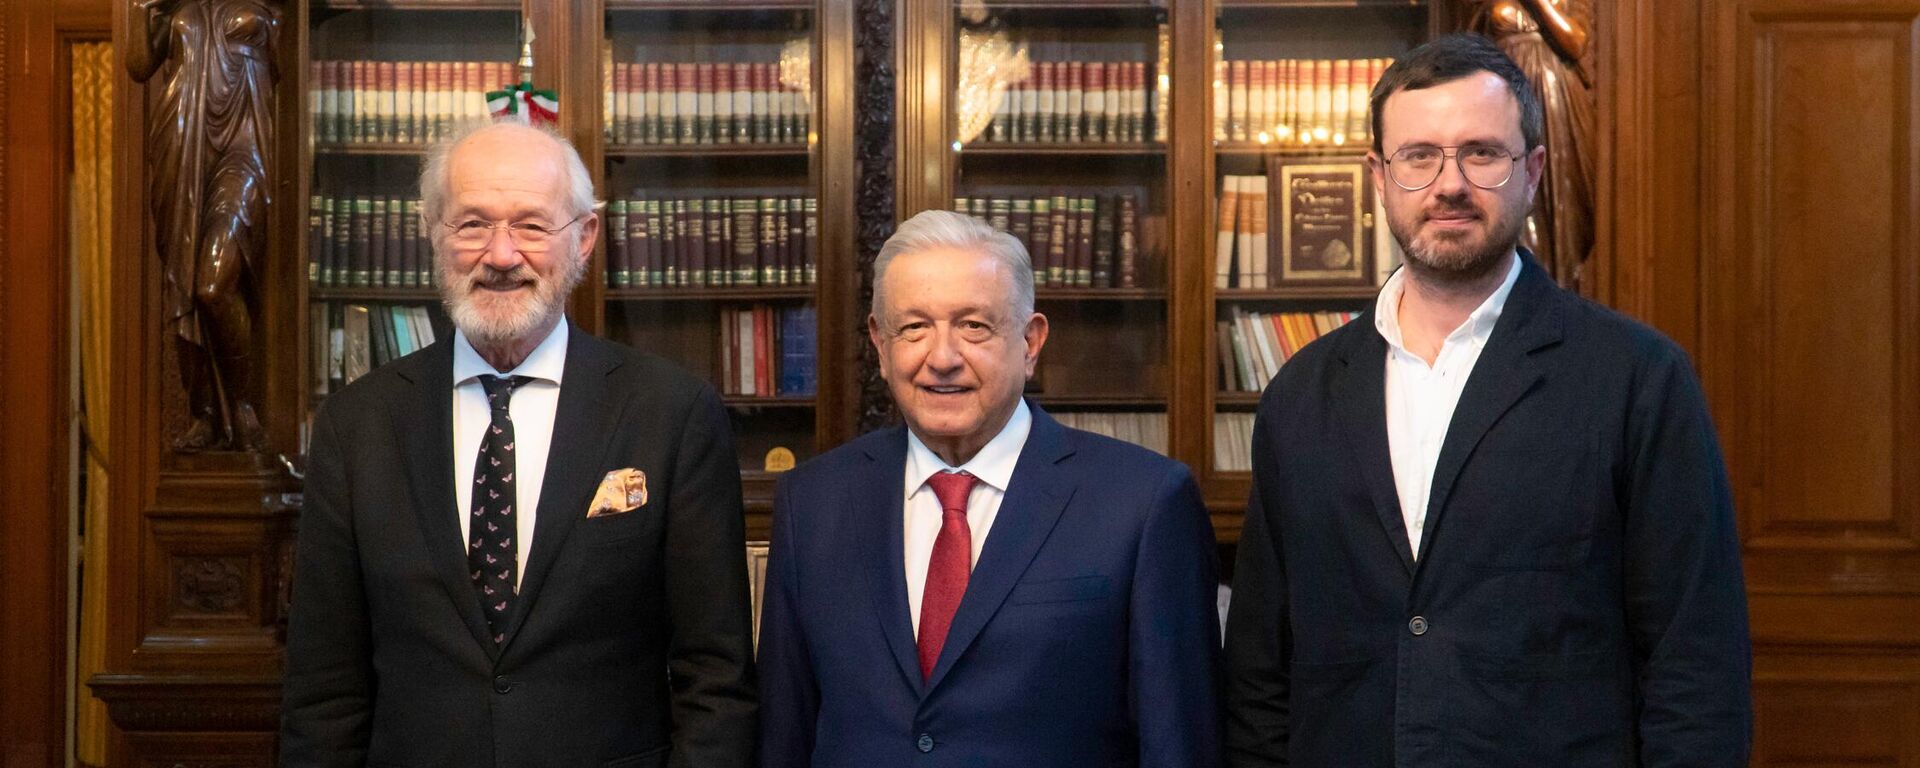 El presidente de México recibió al padre y al hermano de Julian Assange - Sputnik Mundo, 1920, 20.04.2023